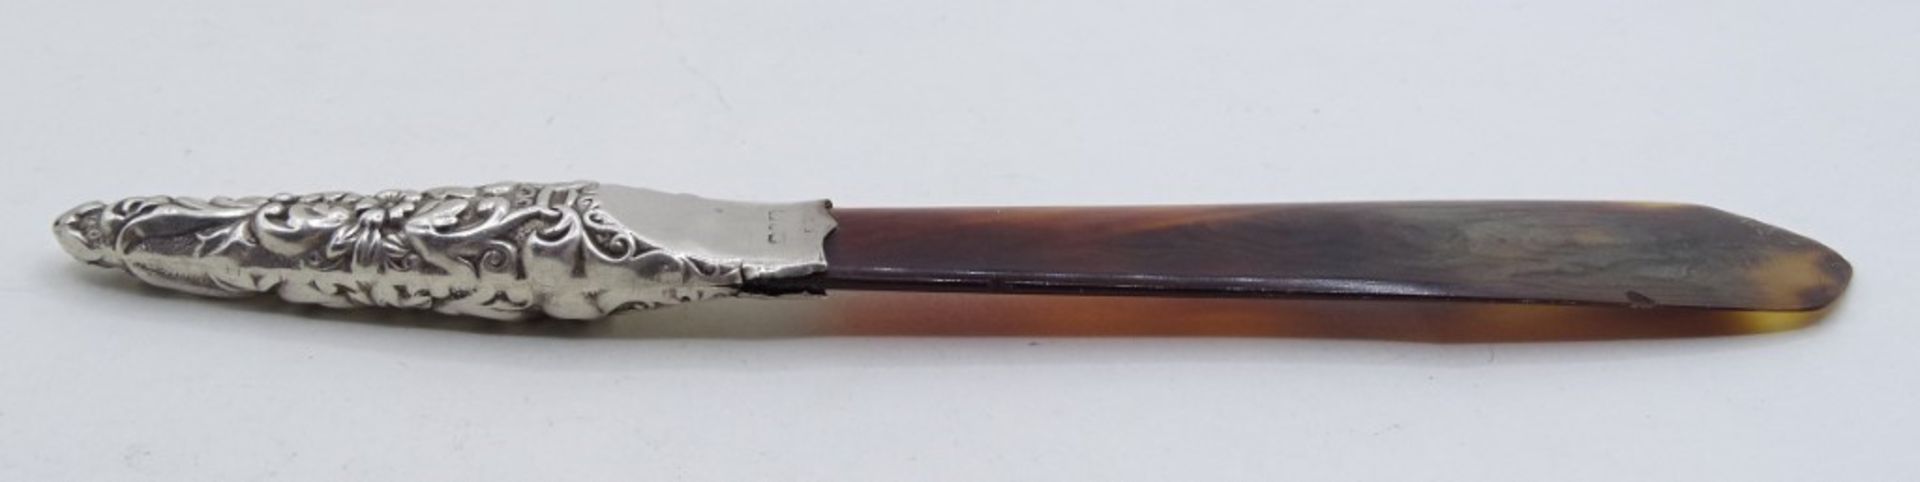 Brieföffner, Hornimitat mit Silbergriff (gepr.), Punze nicht mehr lesbar, L. 14,5 cm, 6 gr., mit Al - Bild 5 aus 6